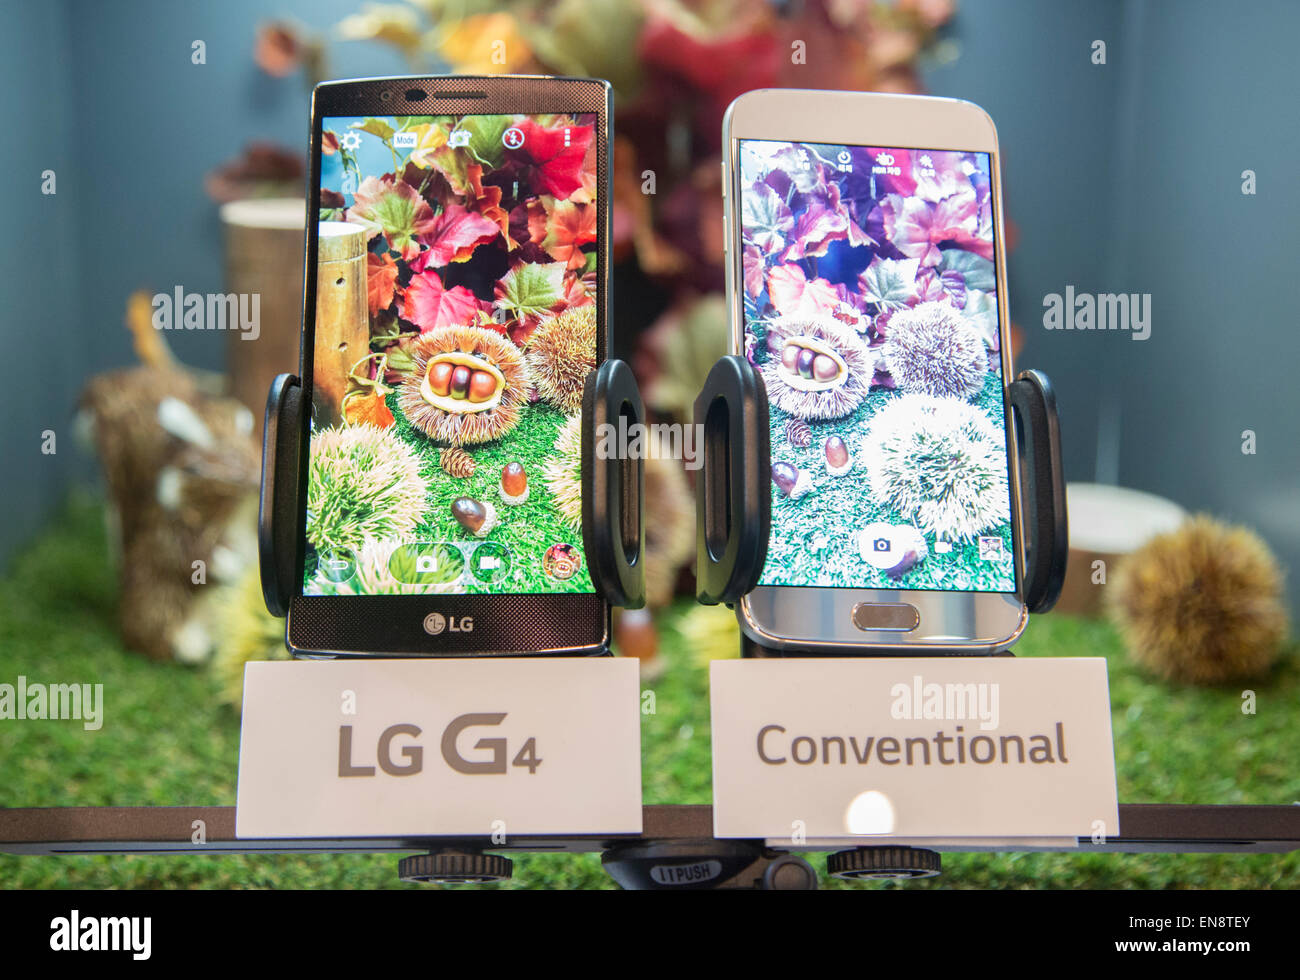 Séoul, Corée du Sud. 29 avril, 2015. LG Electronics G4 smartphone (L) et le Samsung Galaxy S6 sont affichés lors d'une vitrine de LG G4 à Séoul, Corée du Sud. LG a présenté son nouveau G4 le mercredi, c'est équipé de 5,5 pouces IPS (in-plane switching) QHD écran, un processeur Qualcomm Snapdragon 808 avec X10 et une F LTE 1.8 Objectif de l'appareil. Le nouveau smartphone fonctionne sur Google Android 5.1 Lollipop et ses prix local est d'environ 770 $US, selon les médias locaux. Credit : Lee Jae-Won/AFLO/Alamy Live News Banque D'Images